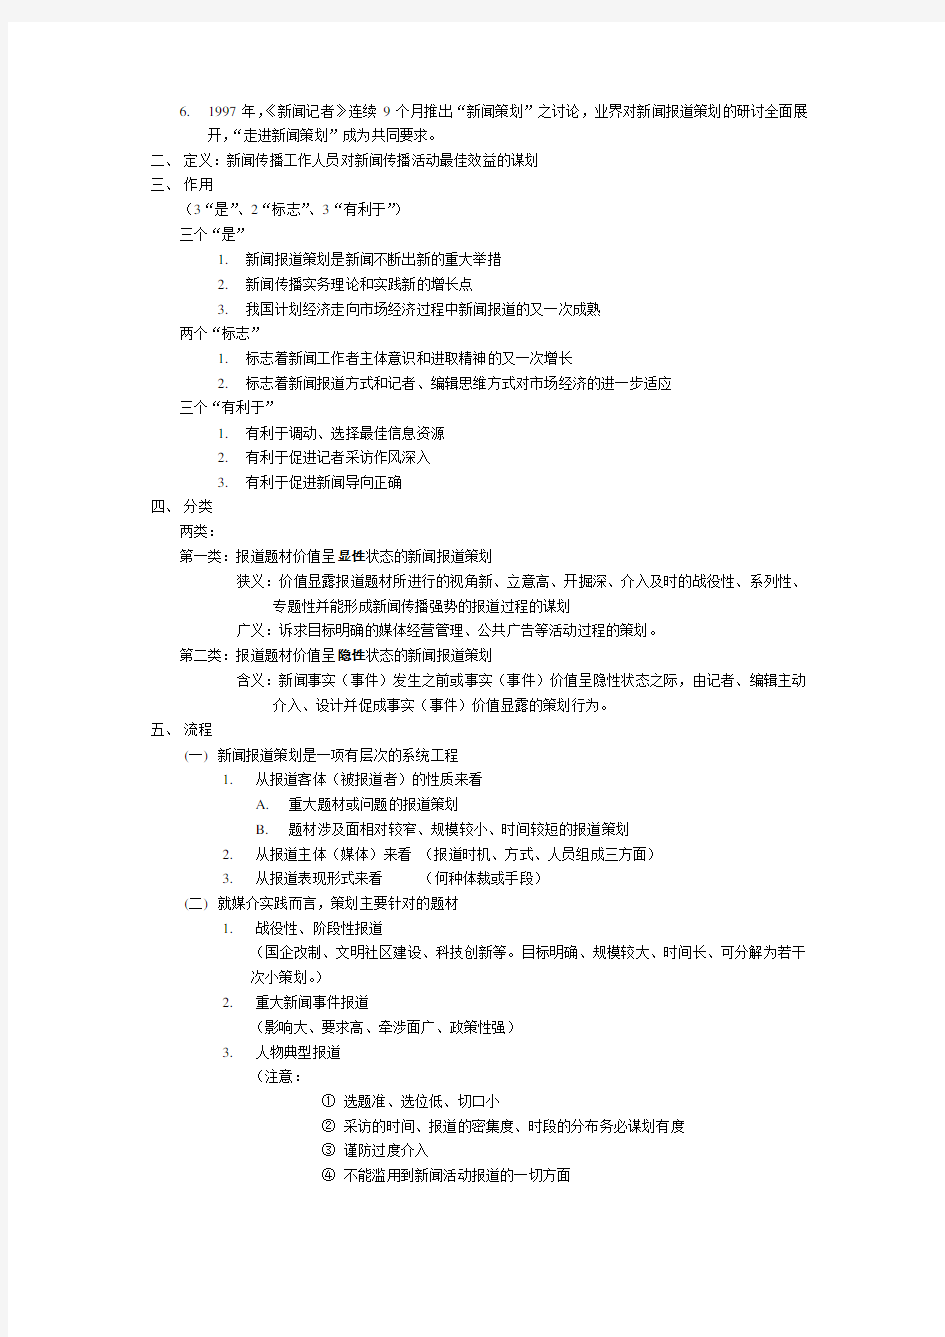 刘海贵《中国新闻采访写作教程》重点笔记+脉络梳理.doc